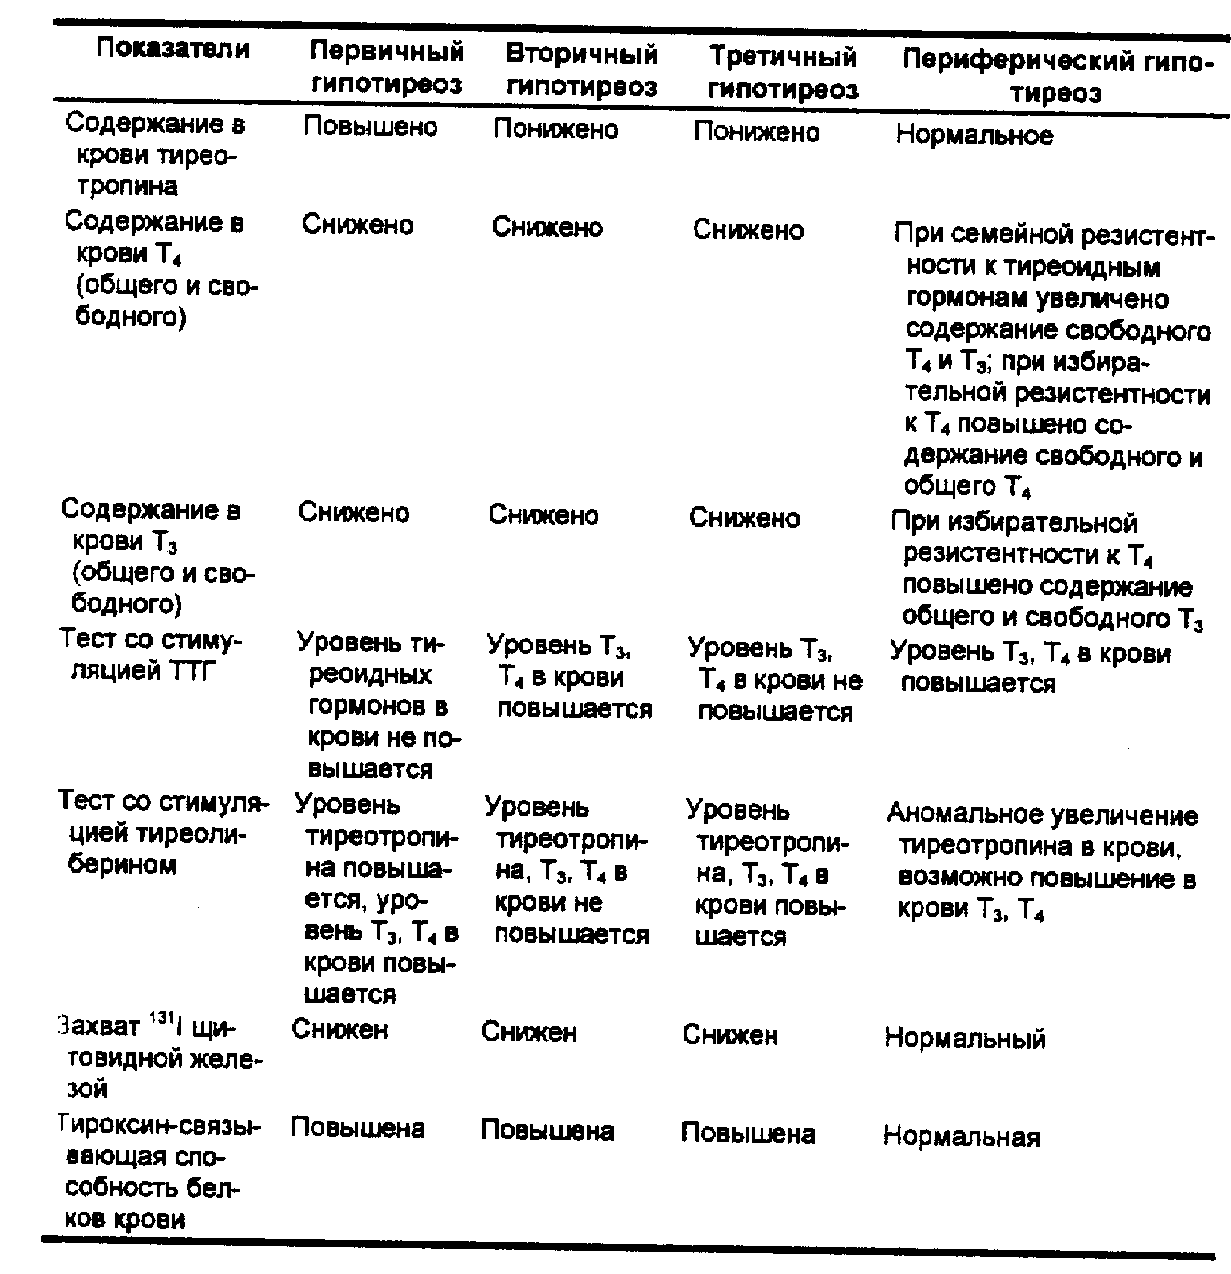 Гипотиреоз показатели. Дифференциальная диагностика тиреотоксикоза и гипотиреоза. Дифференциальная диагностика первичного и вторичного гипотиреоза. Дифференциальный диагноз гипотиреоза и тиреотоксикоза. Дифференциальный диагноз гипотиреоза таблица.